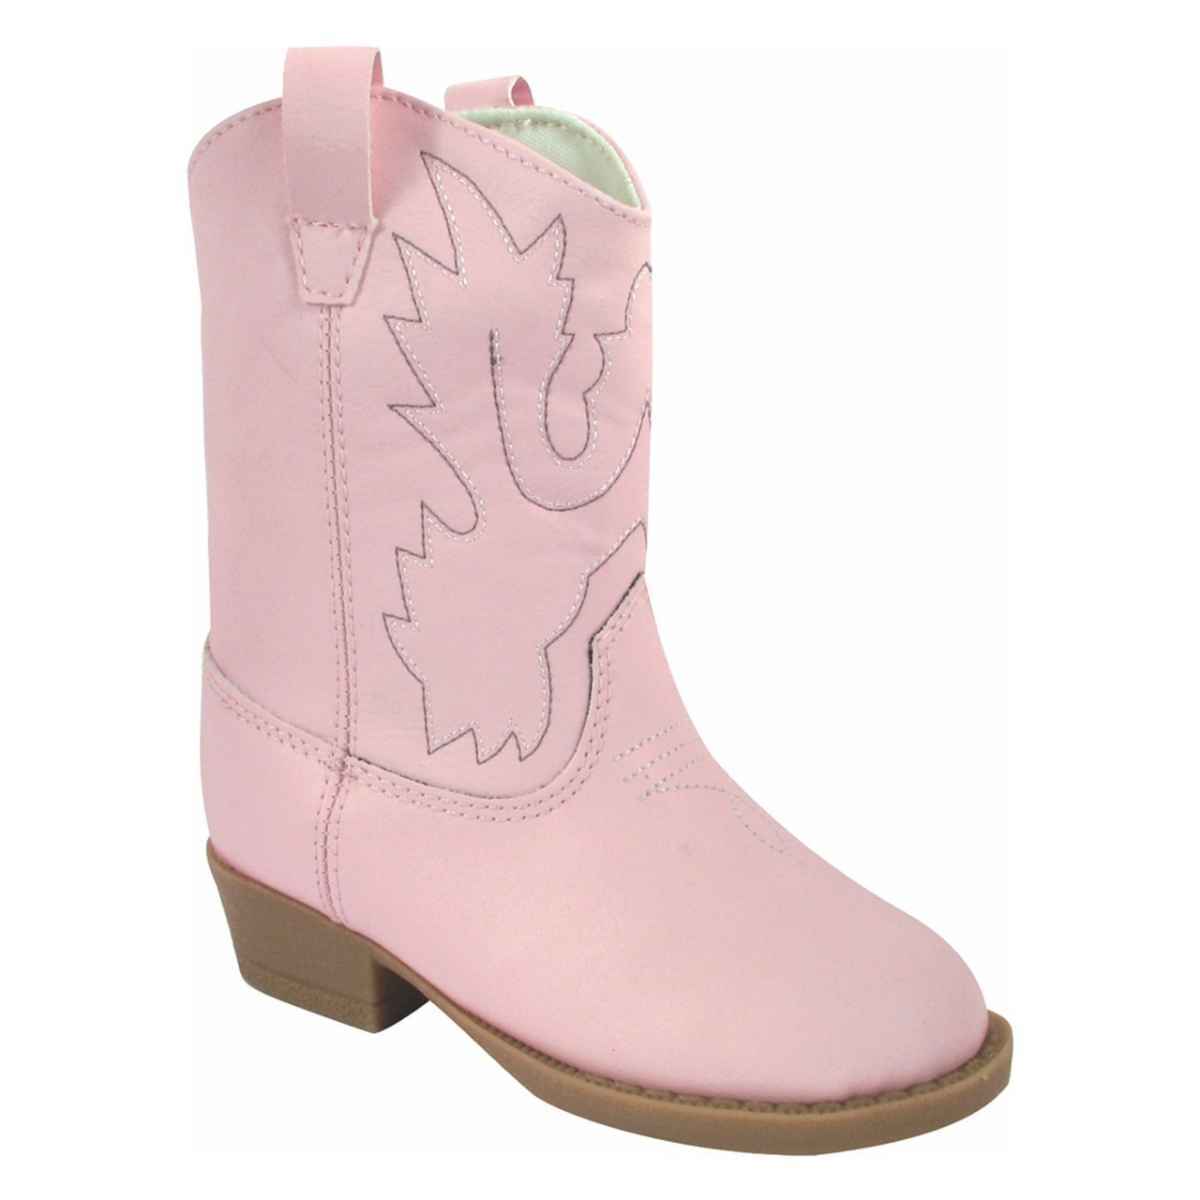 https://kidsshoebox.com/wp-content/uploads/2022/03/miller-toddler-pink-cowboy-boots.jpg